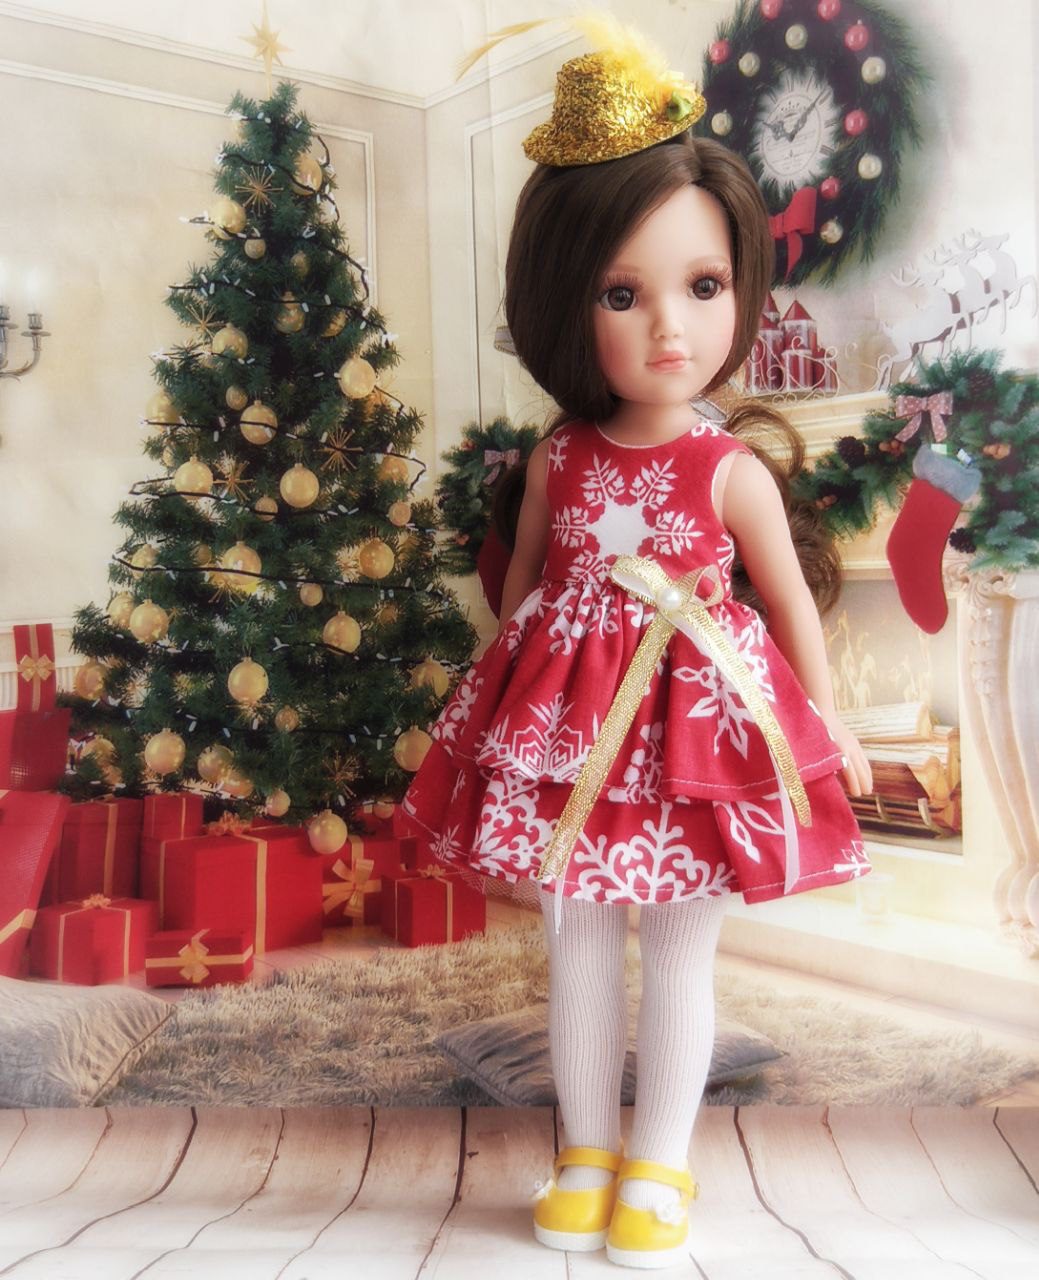 Vidal Rojas, кукла Кейт в новогоднем наряде, рост 35 см